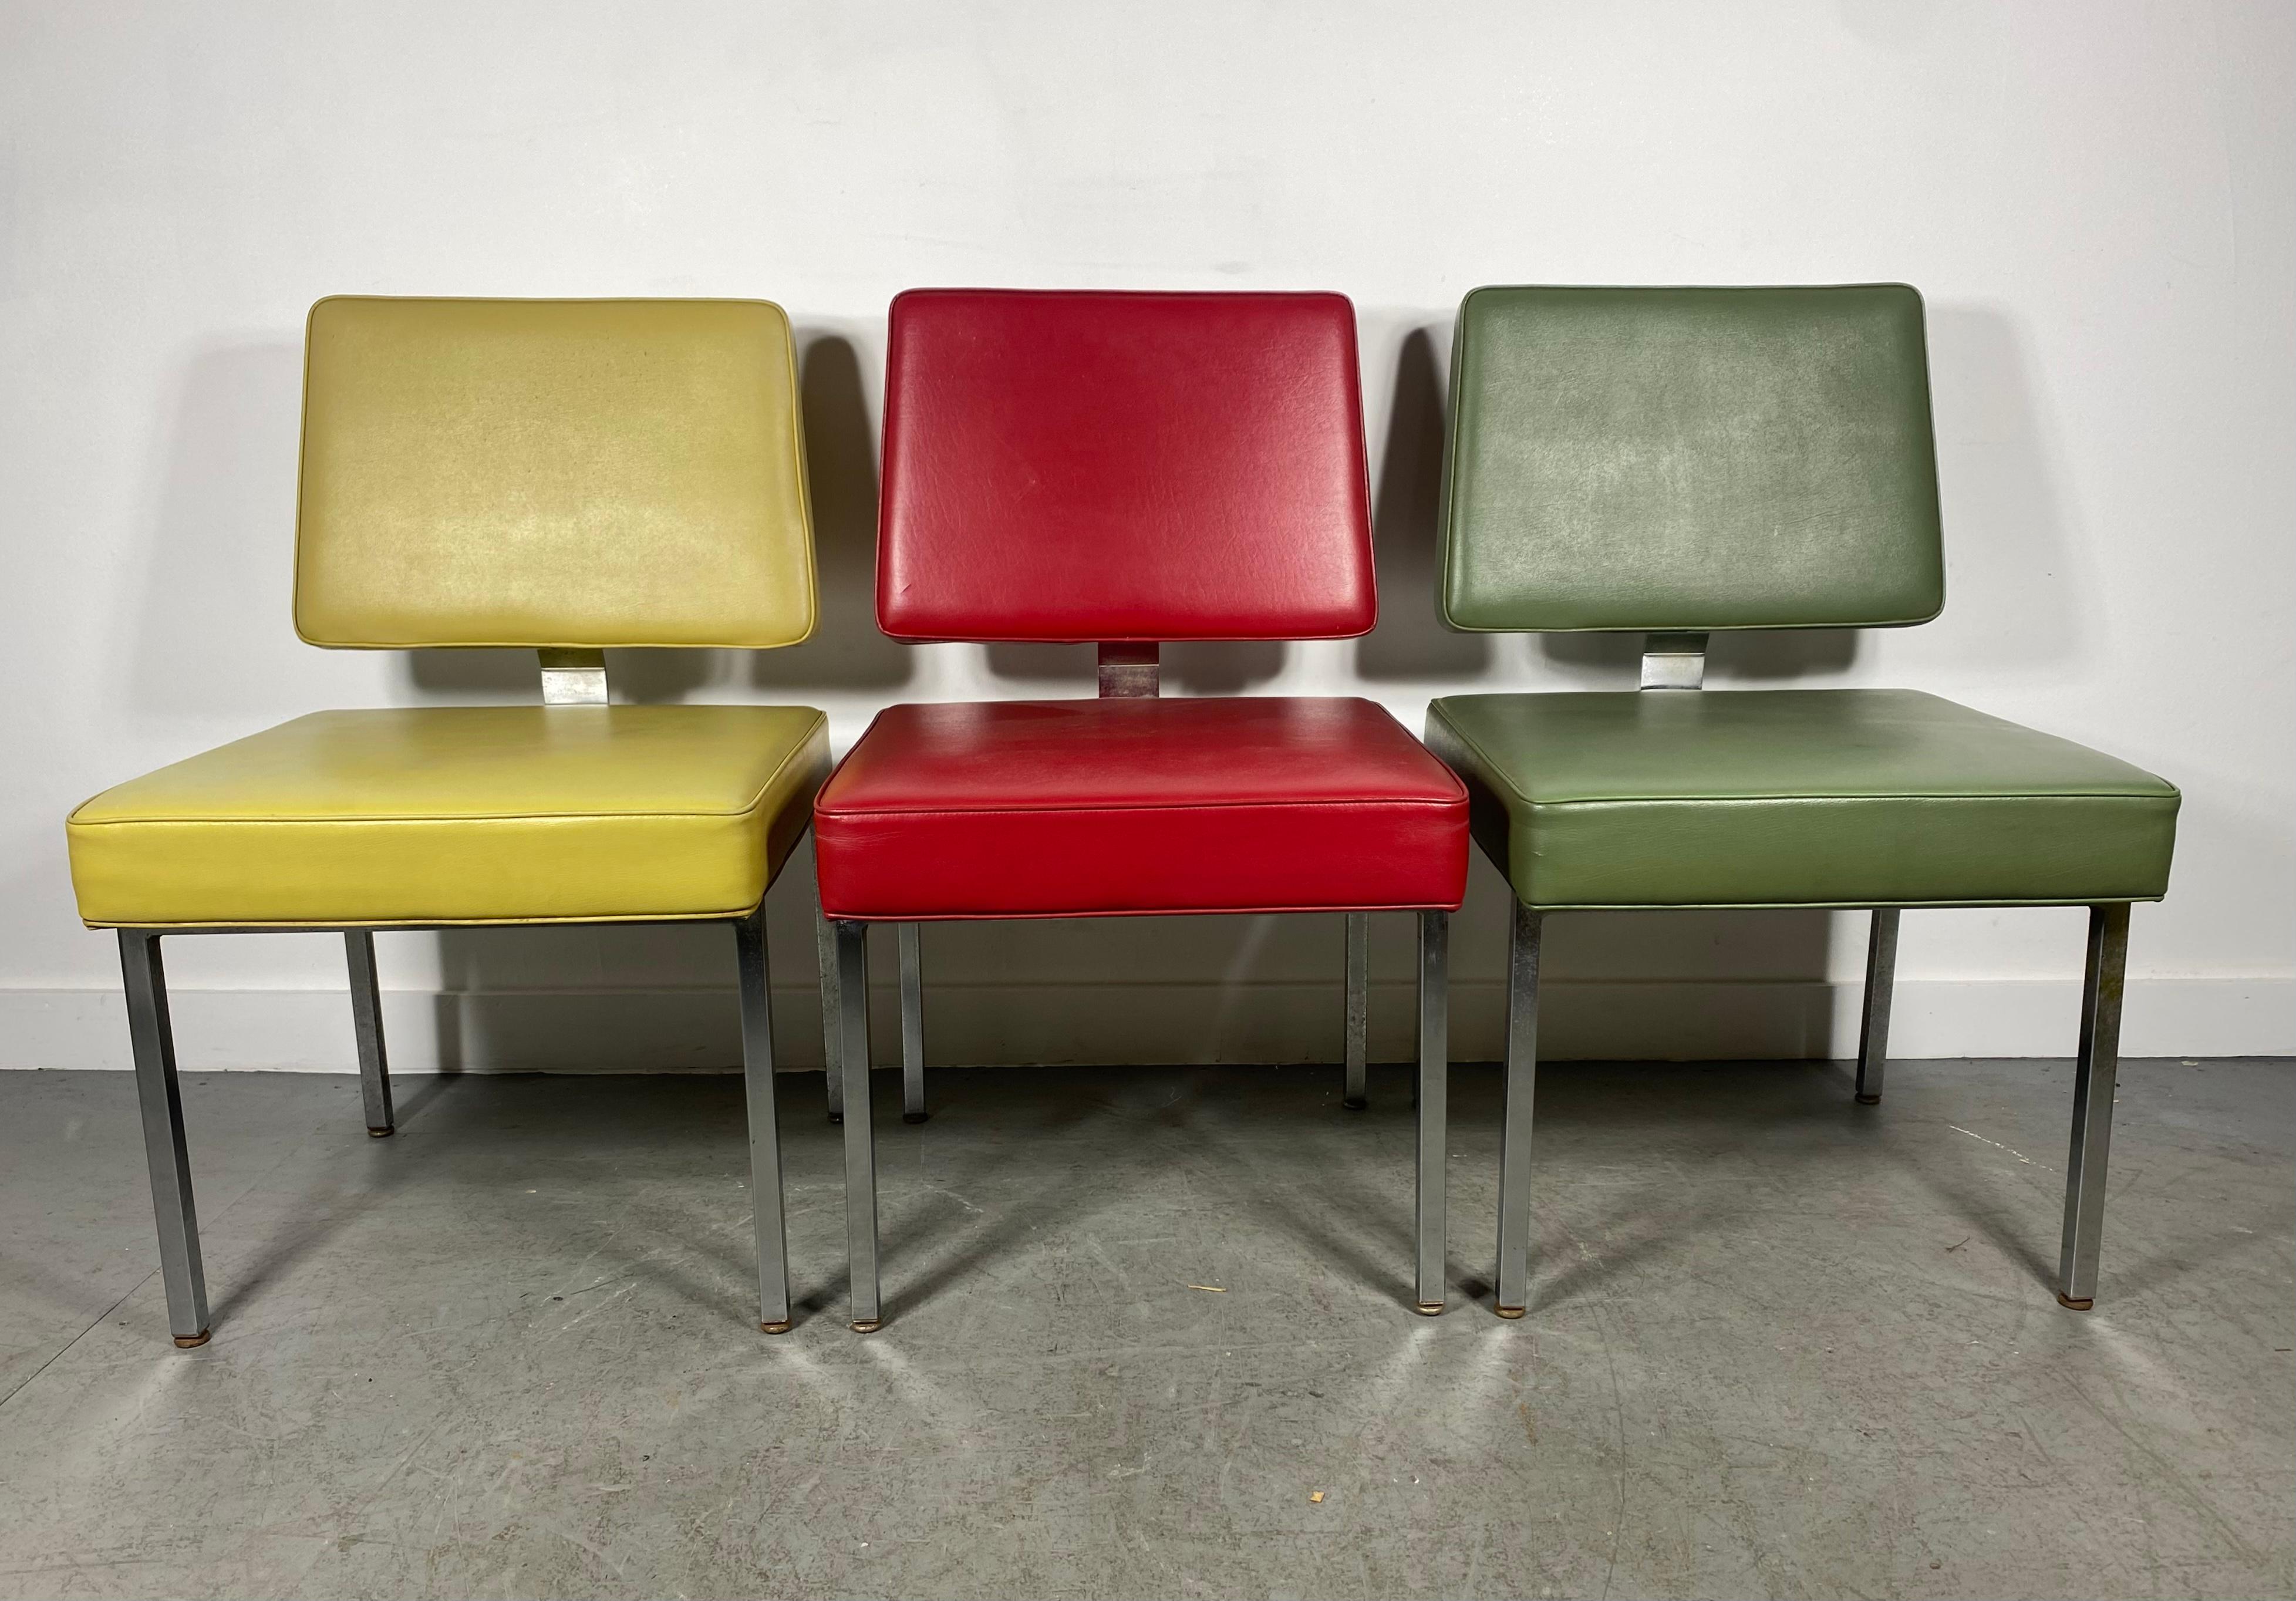 Klassische Mid-Century Modern Chrome und Naugahyde Side Chairs in der Art von Florence Knoll, hergestellt von SIGNORE INC. Klassischer Stil und Design, Erstaunliche Qualität und Konstruktion, behält Original-Polsterung, große Farben. Persönliche